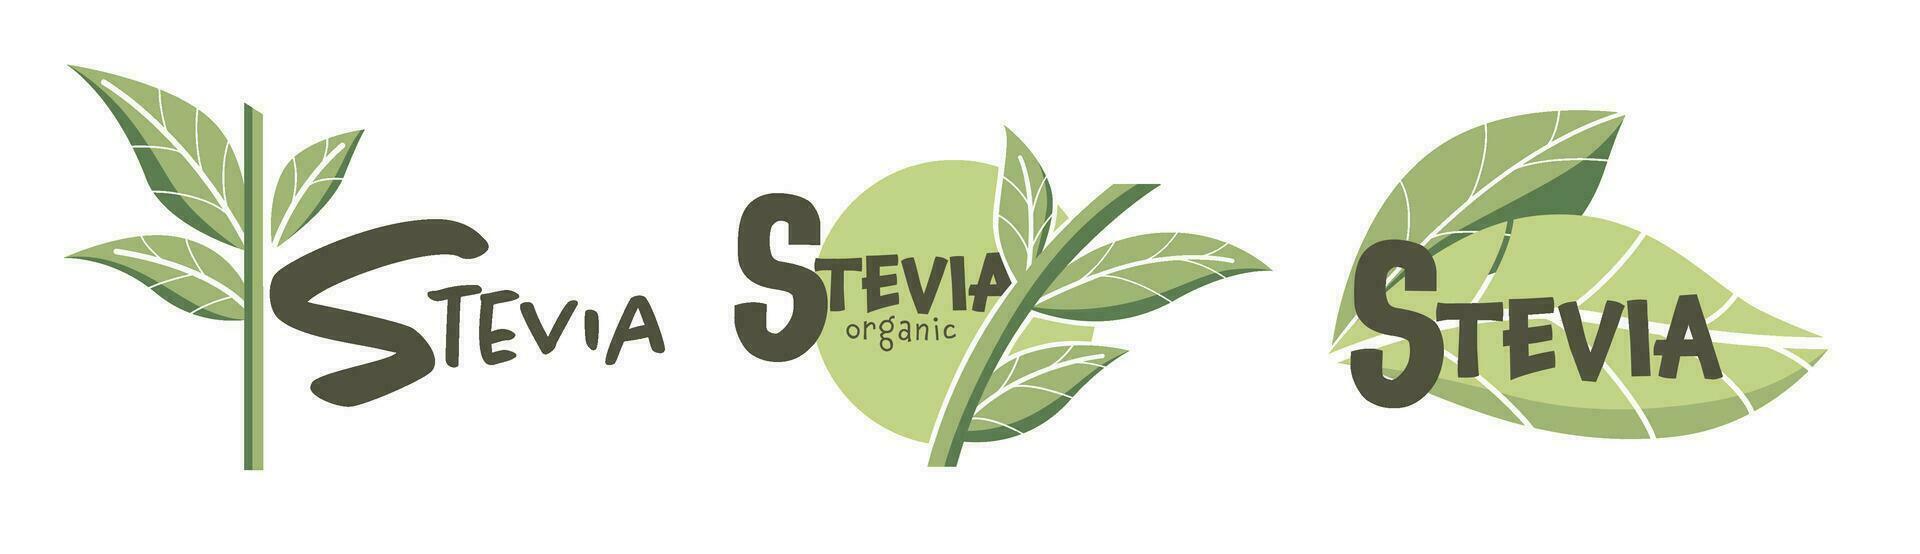 stevia biologique et Naturel édulcorant, logotypes vecteur